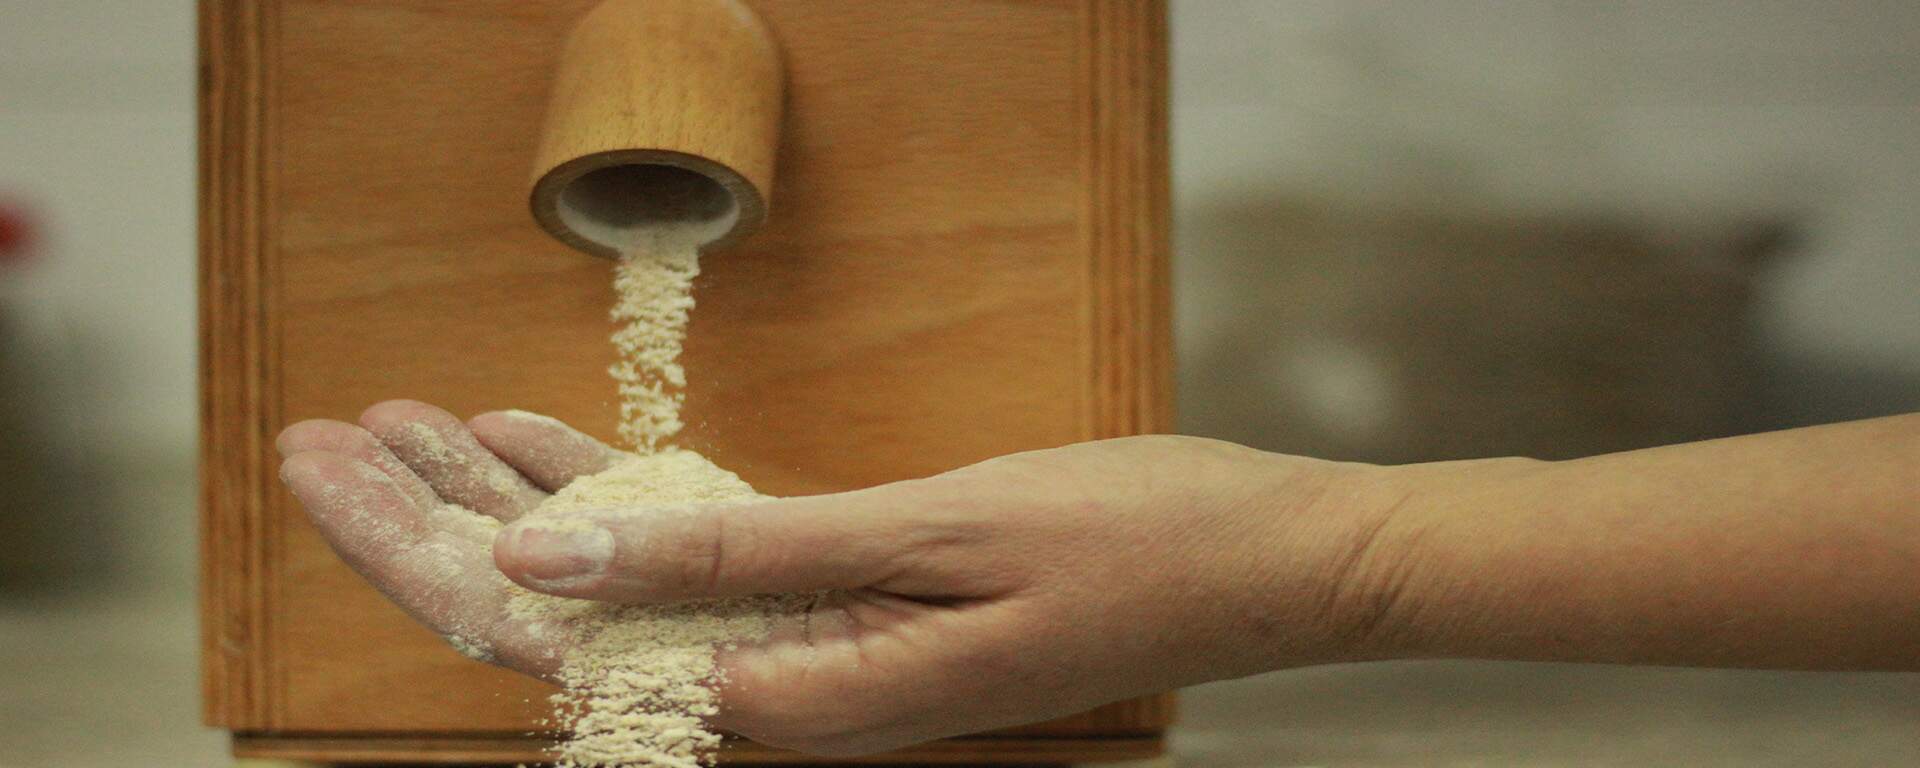 Pão de farinha de trigo integral – A minha visão pessoal